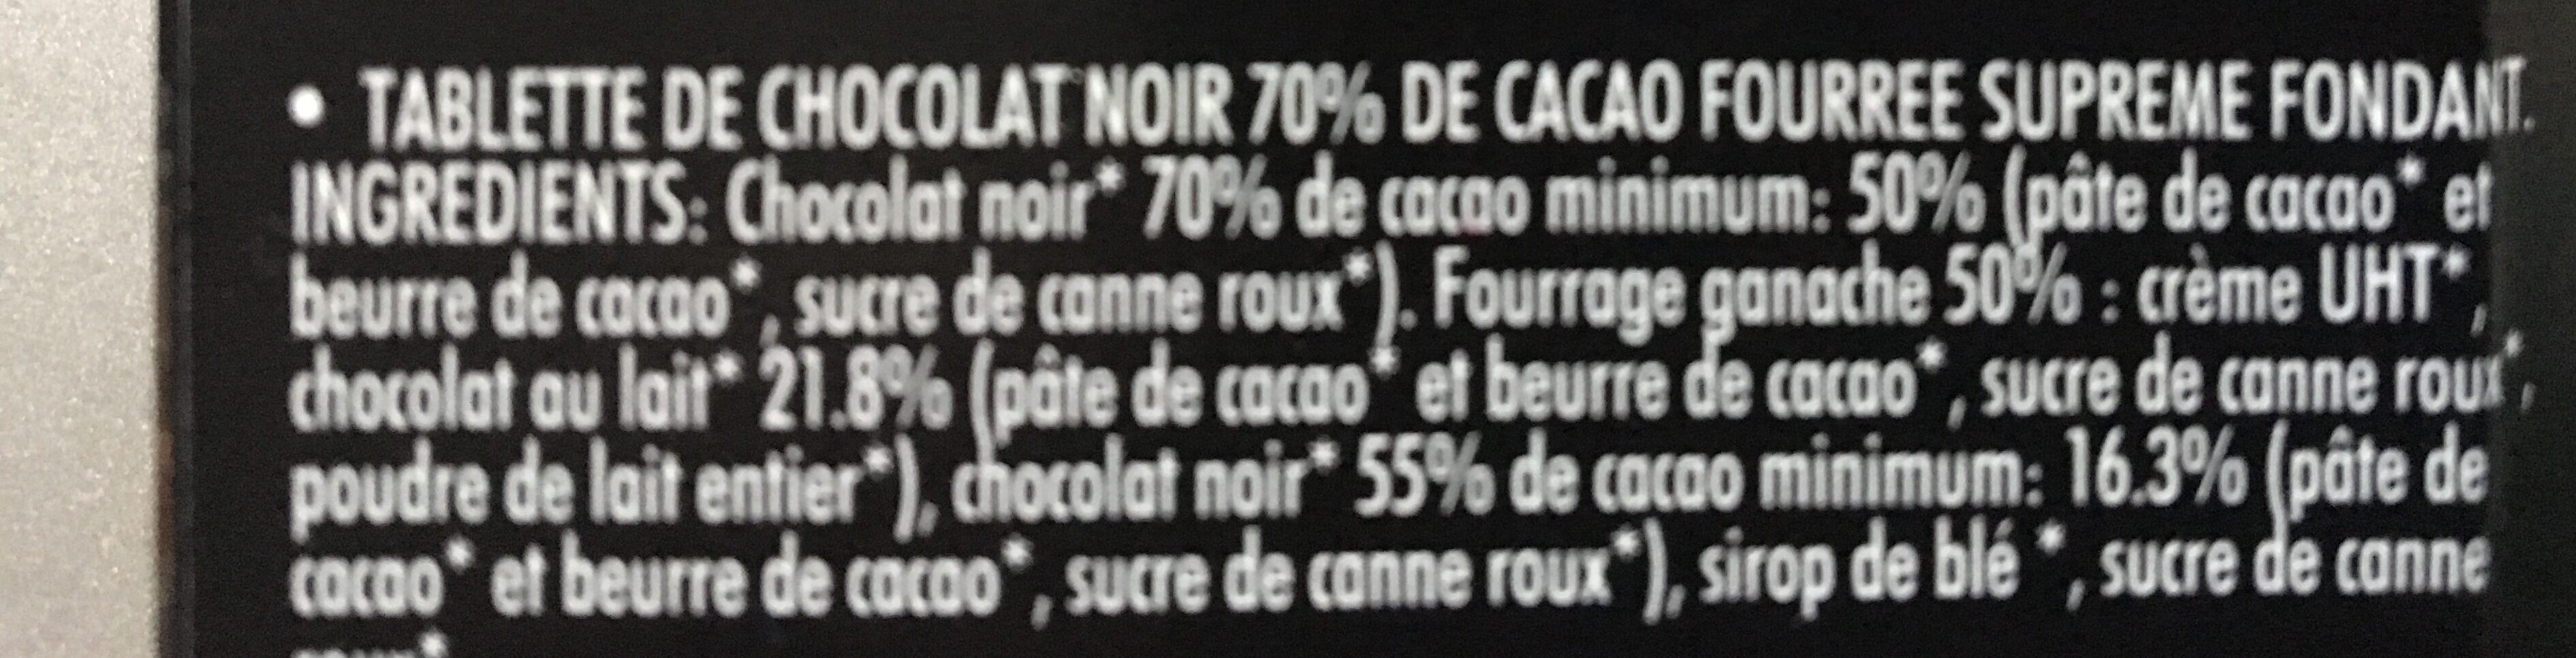 Chocolat Noir coeur fondant 70% Cacao Fourre - Ingredients - fr